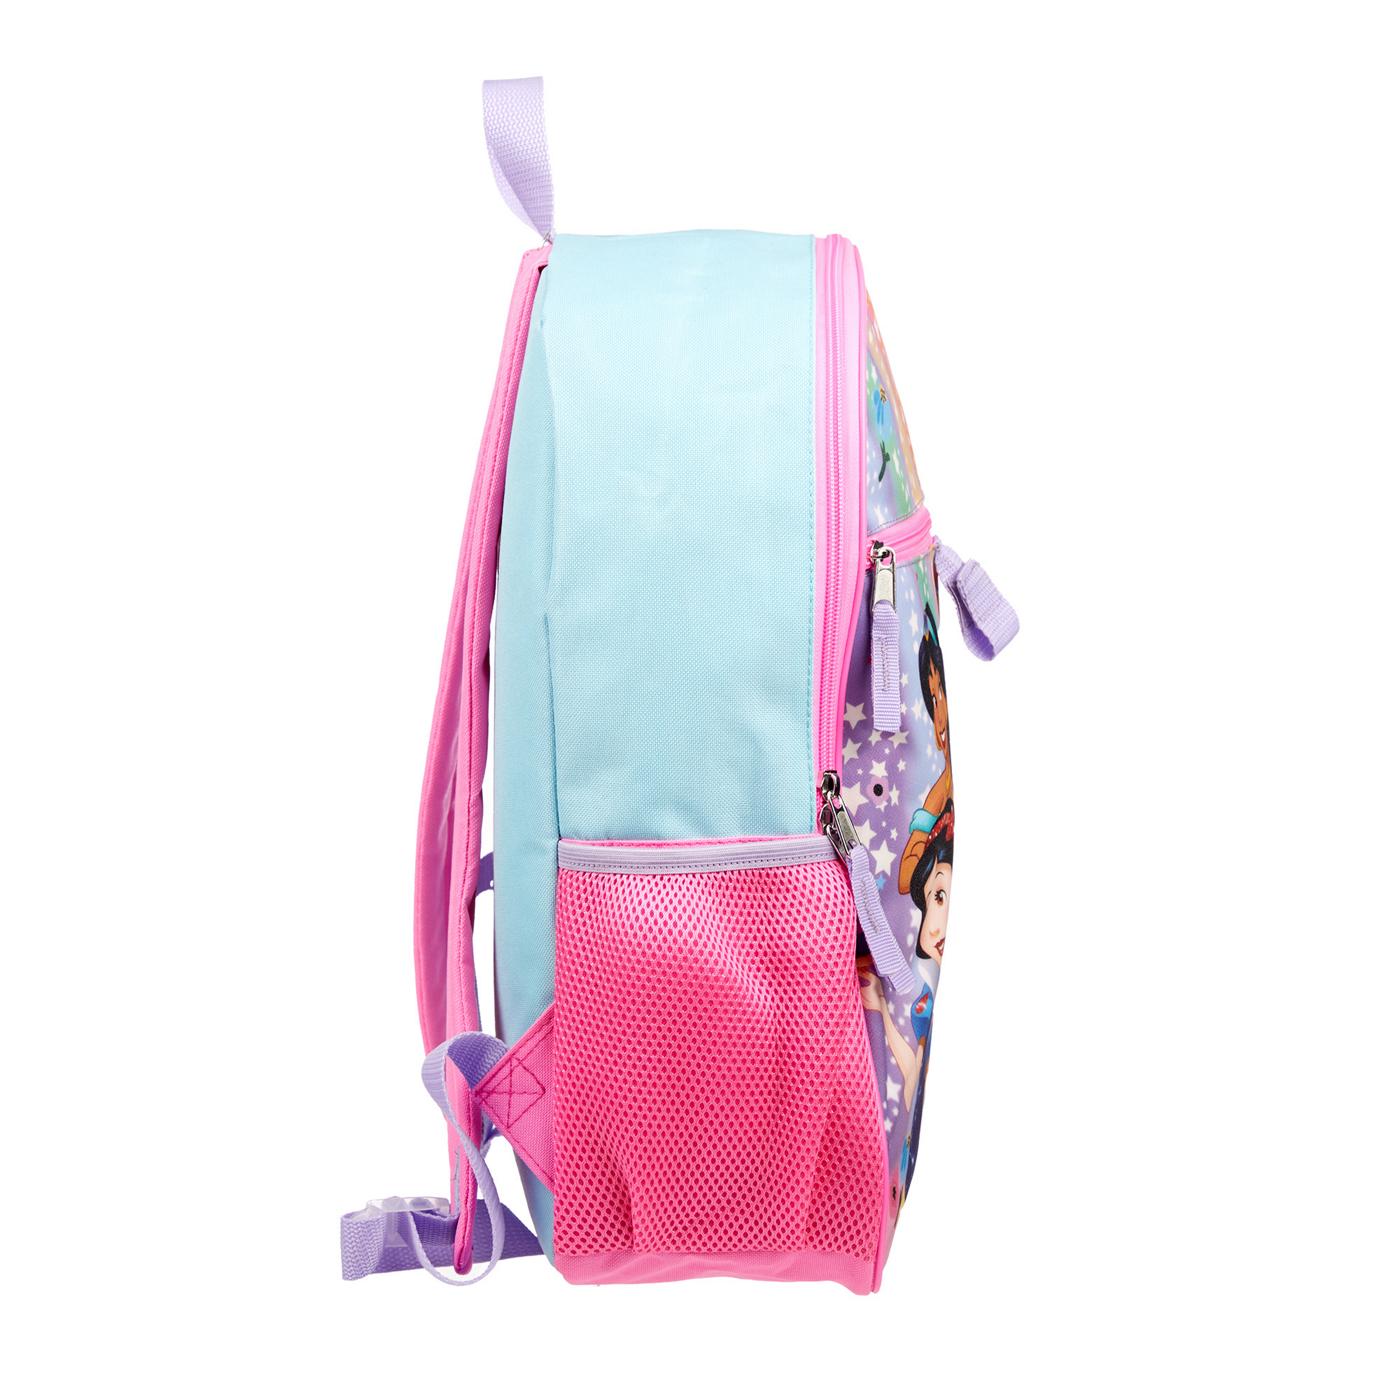 Disney Princess Backpack Set; image 4 of 5